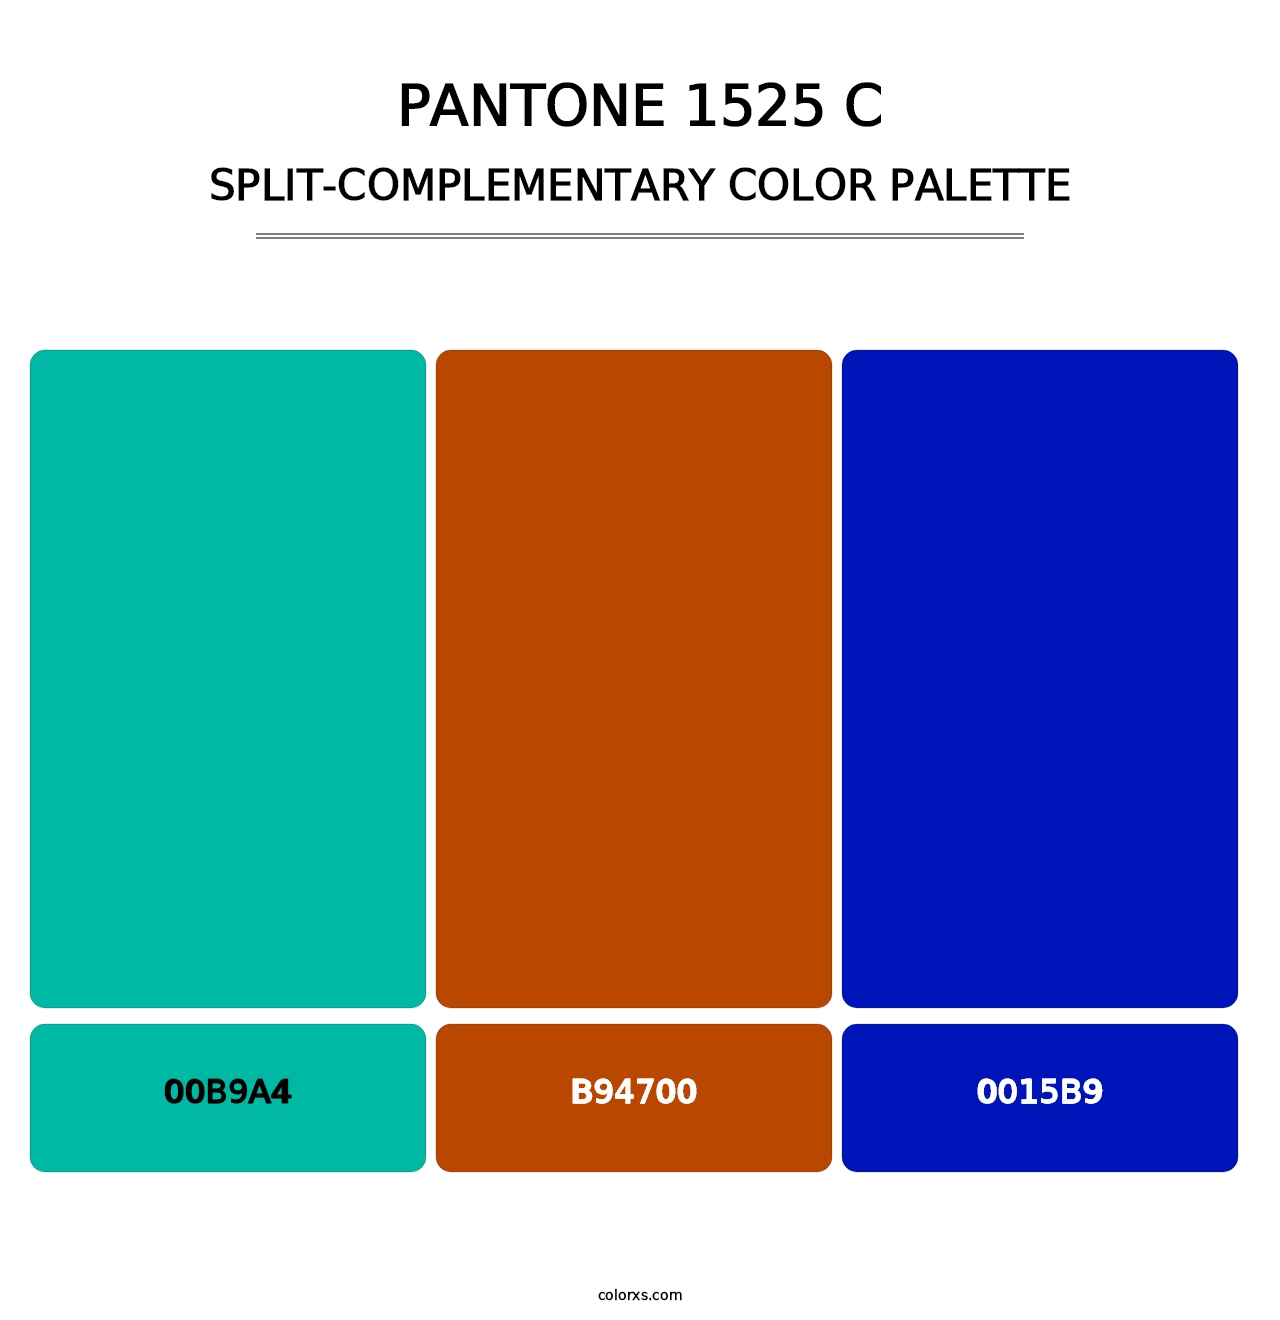 PANTONE 1525 C - Split-Complementary Color Palette